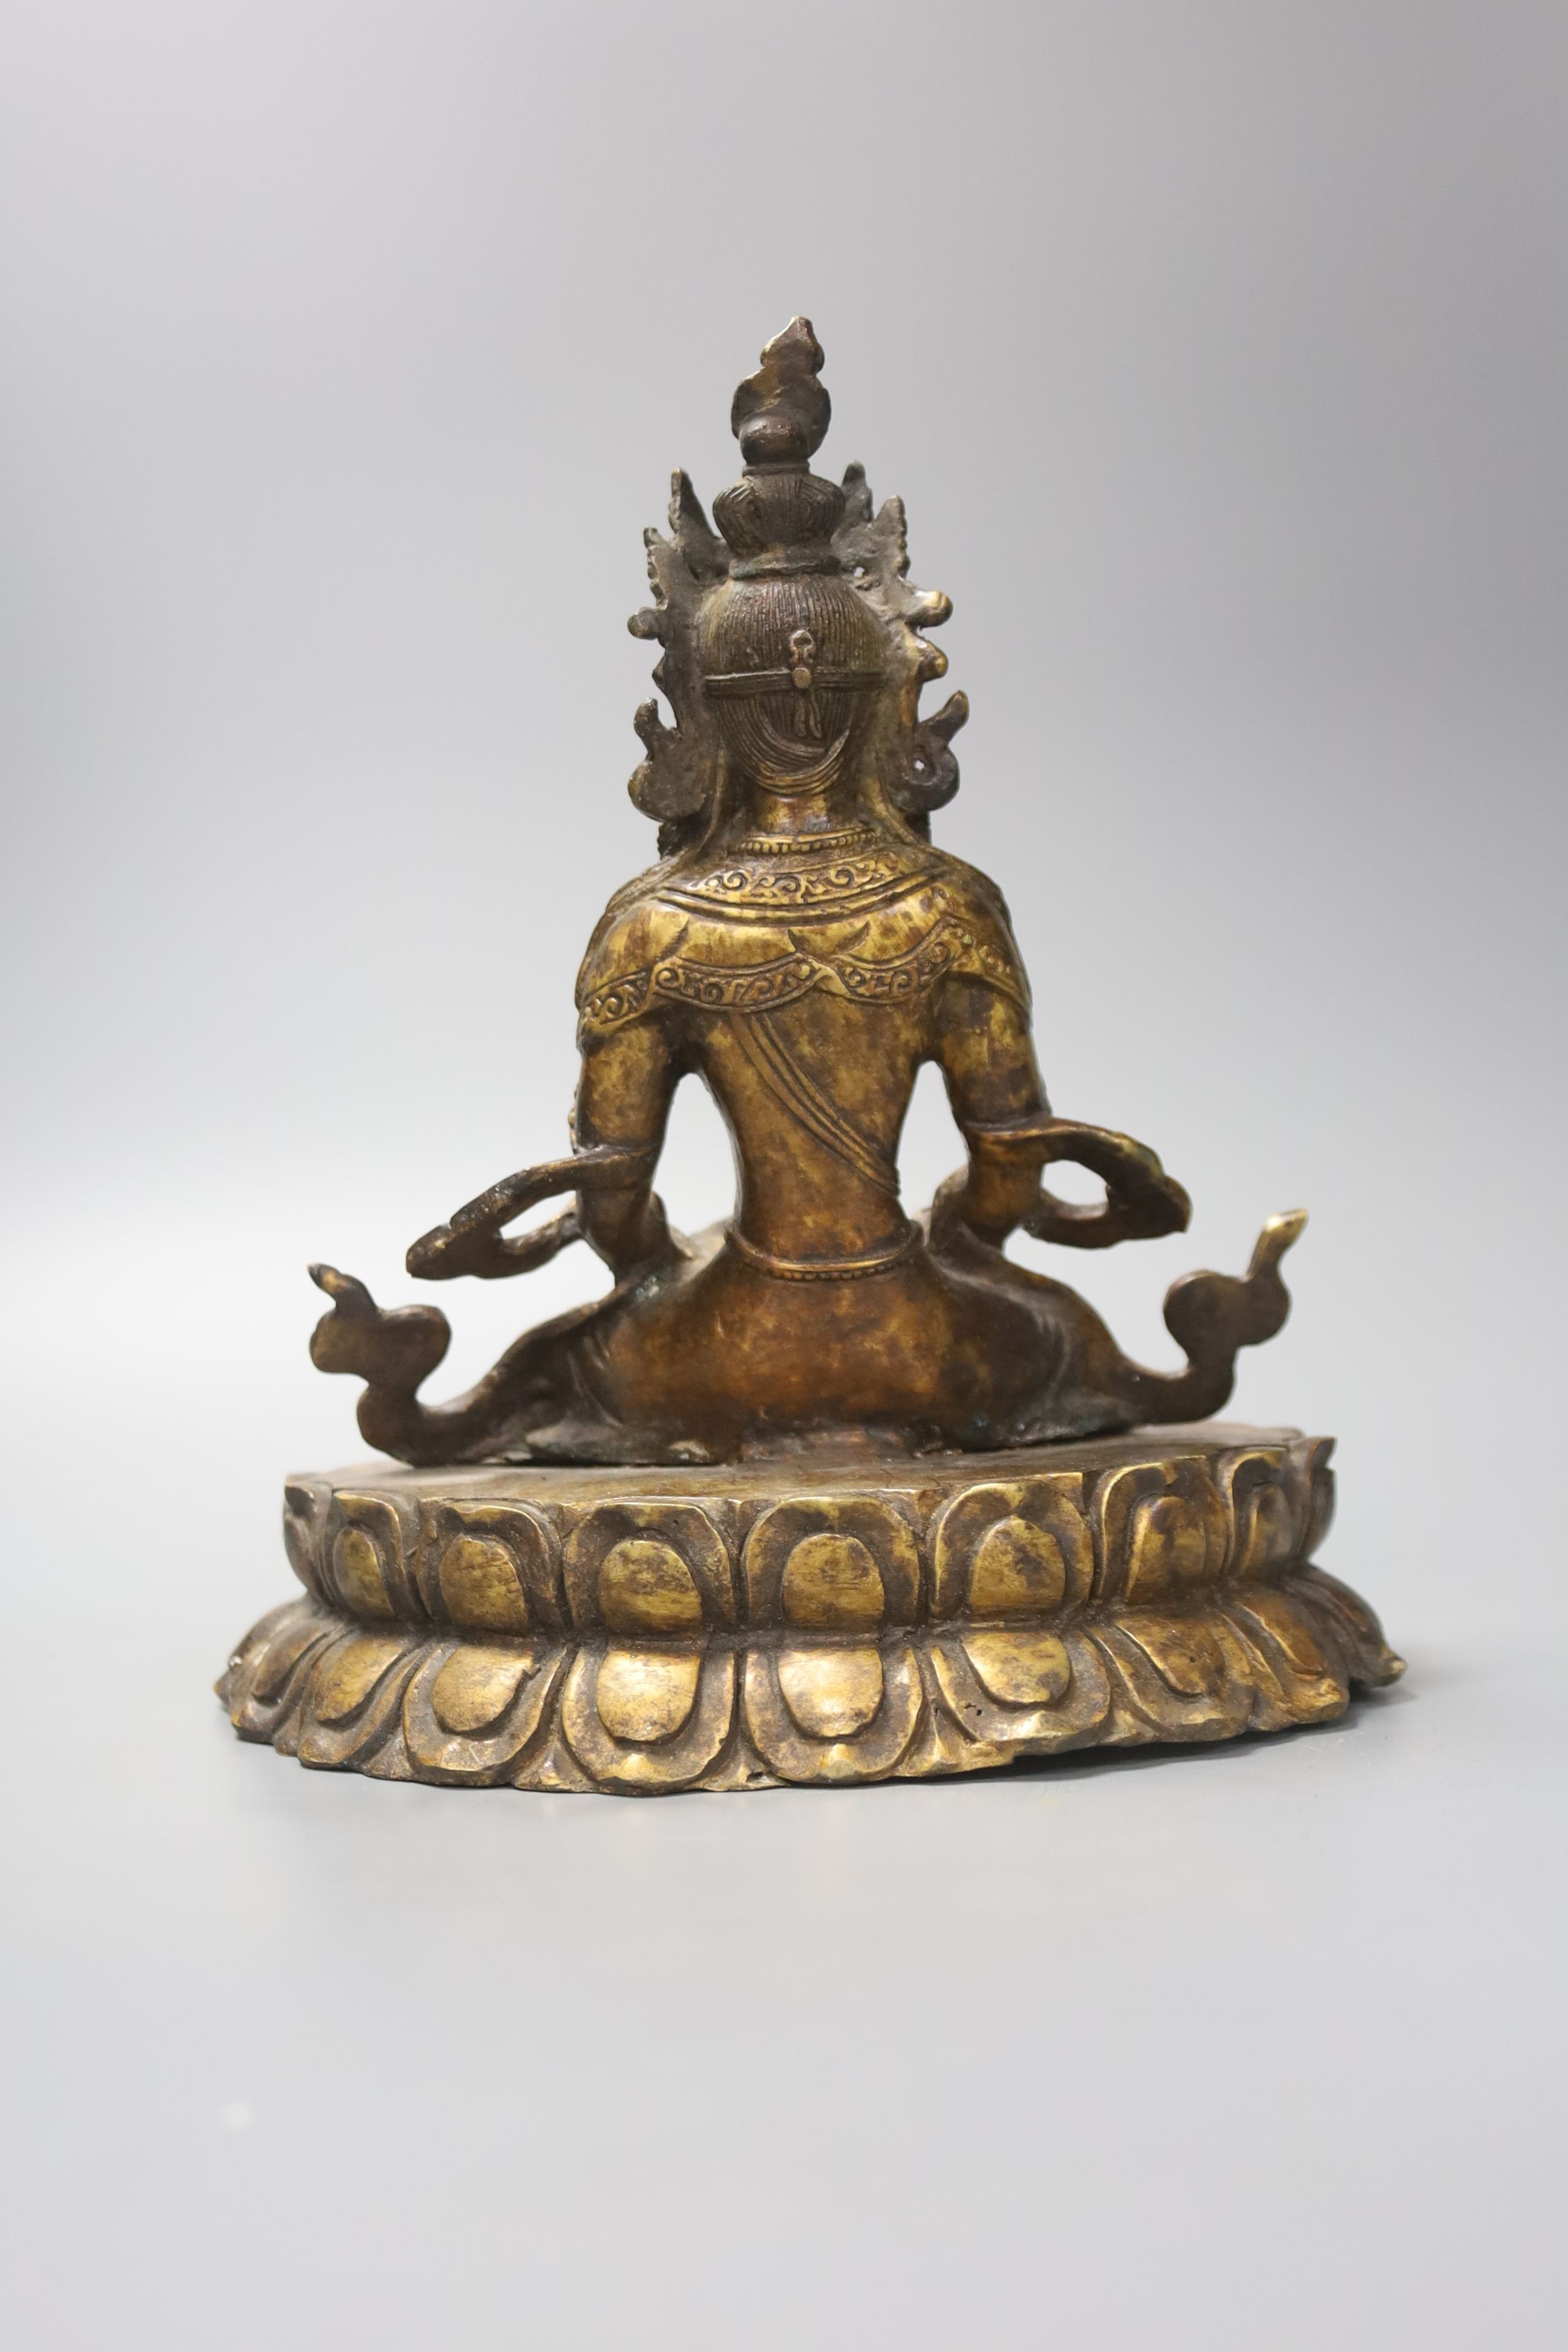 A seated bronze figure of a Bodhisattva, 20cm